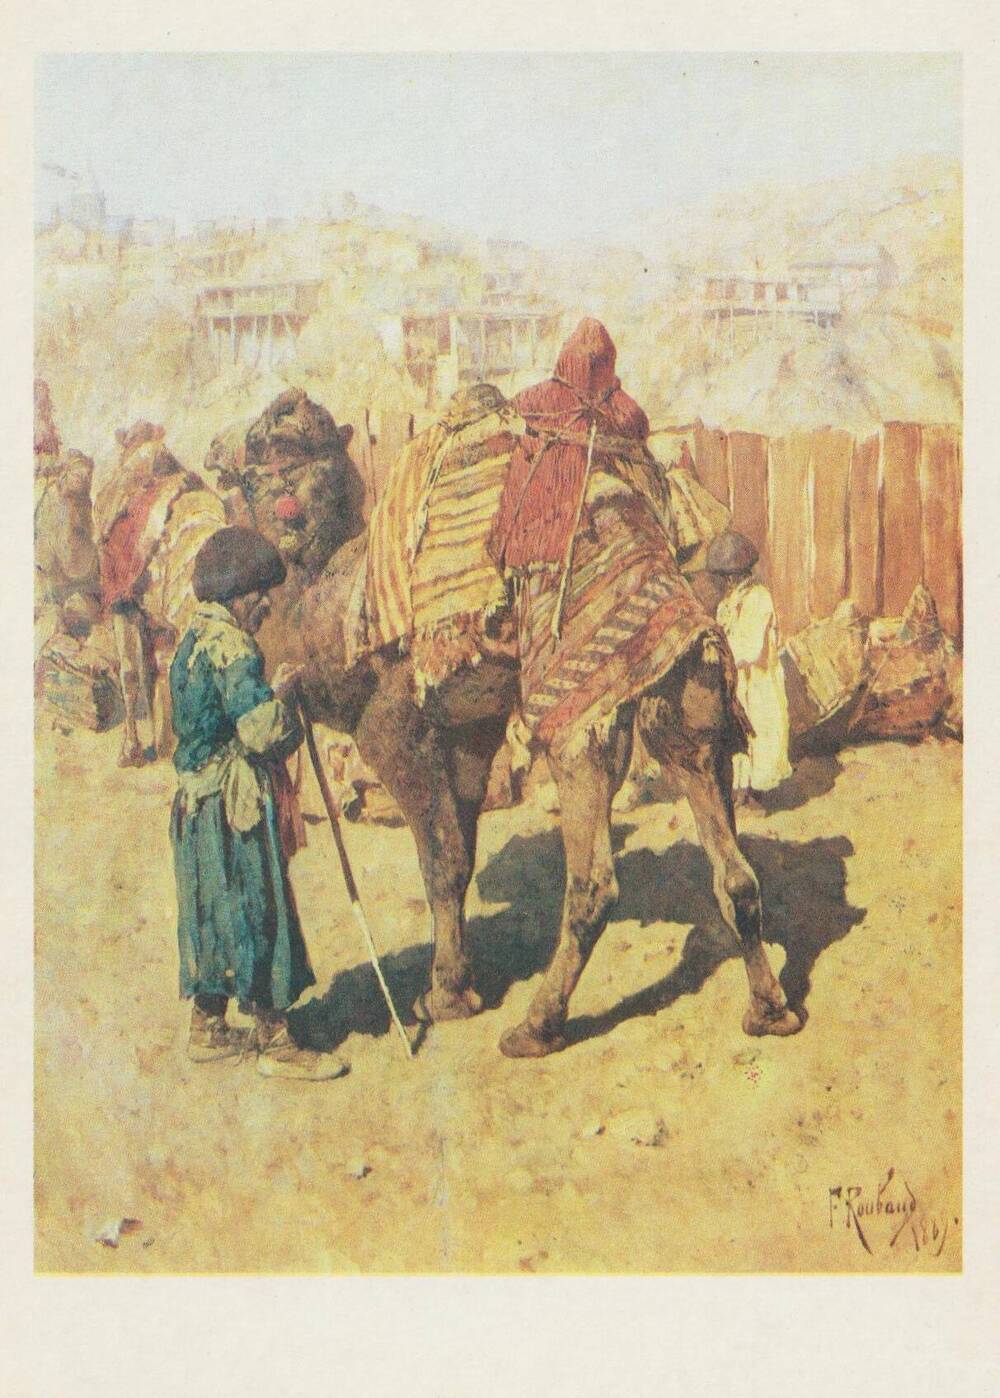 Открытка художественная. Ф.А. Рубо Караван в ауле, 1889 г.